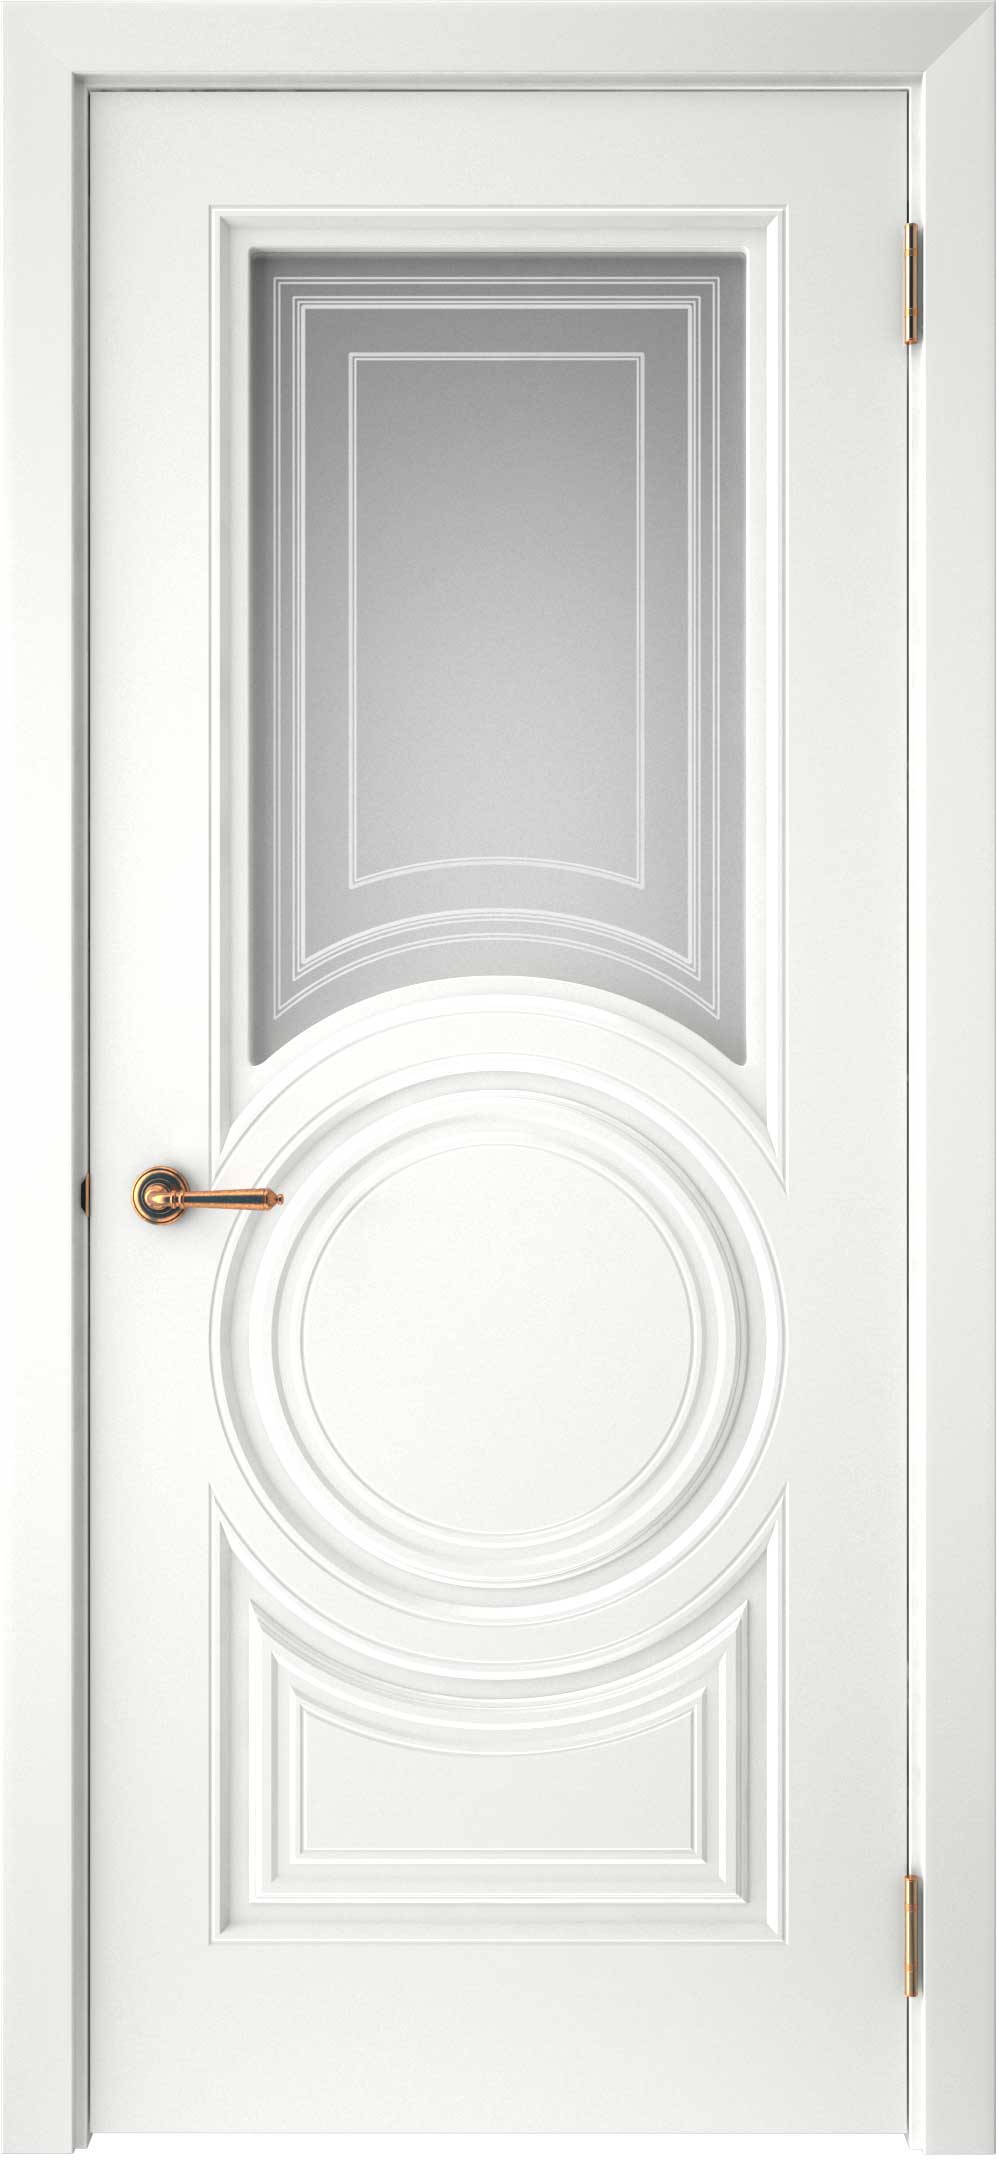 Двери крашеные (Эмаль) ТЕКОНА Смальта-45 со стеклом Белый ral размер 200 х 70 см. артикул F0000093317